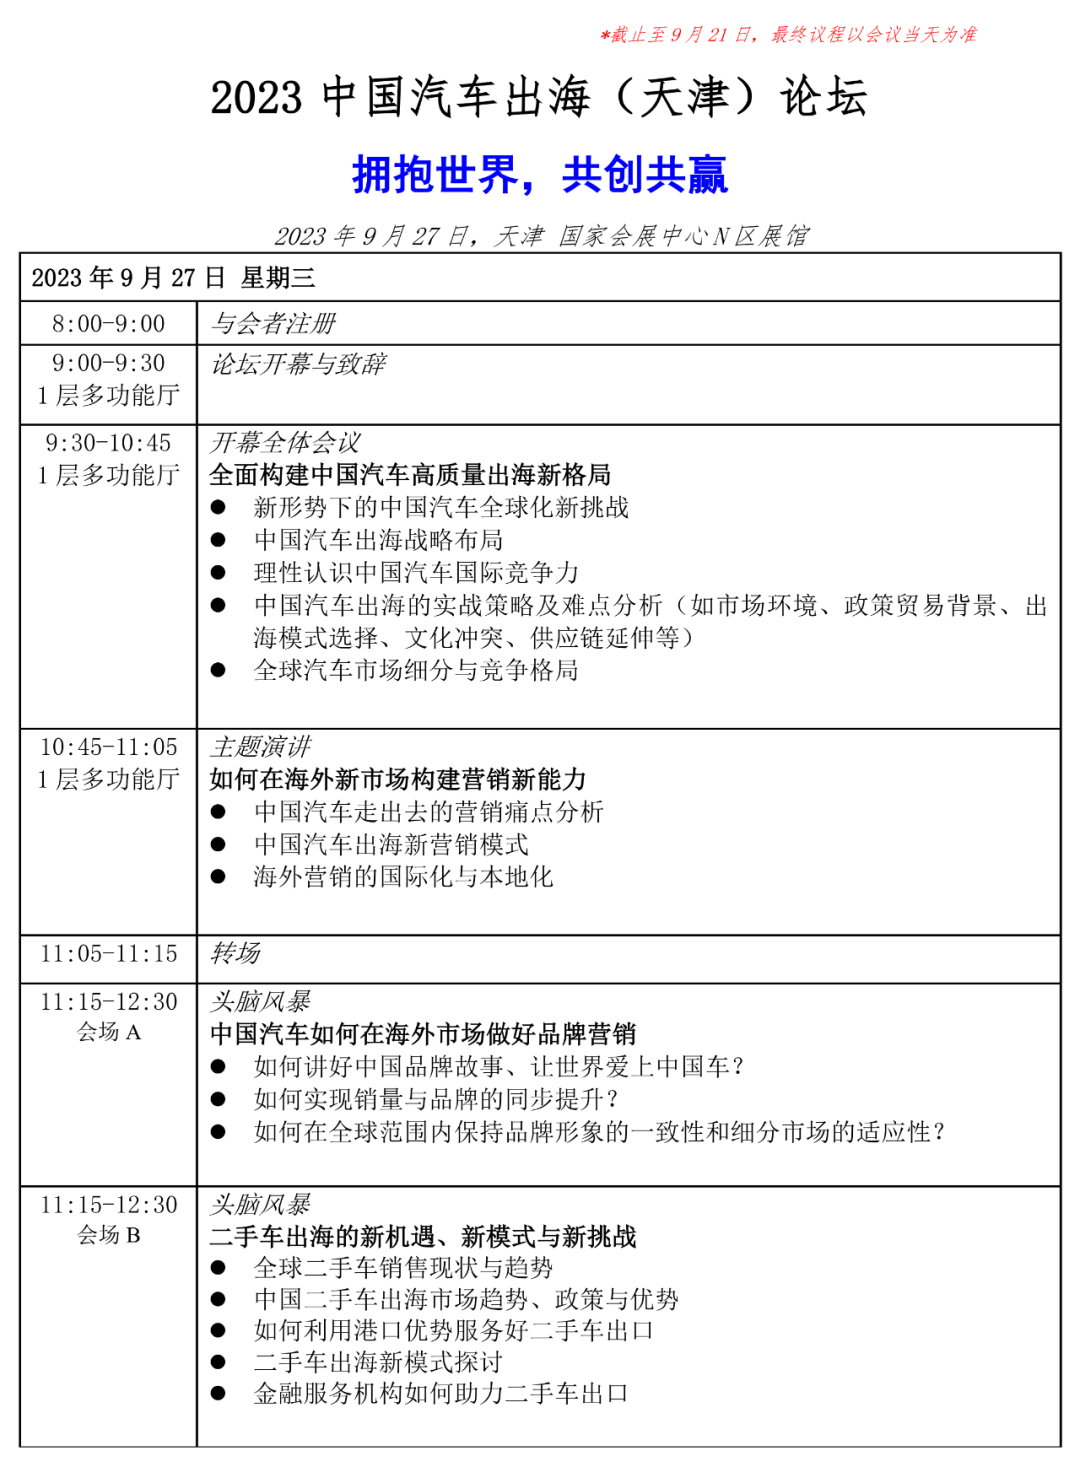 2023中国汽车出海（天津）论坛将于2023年9月27日举办